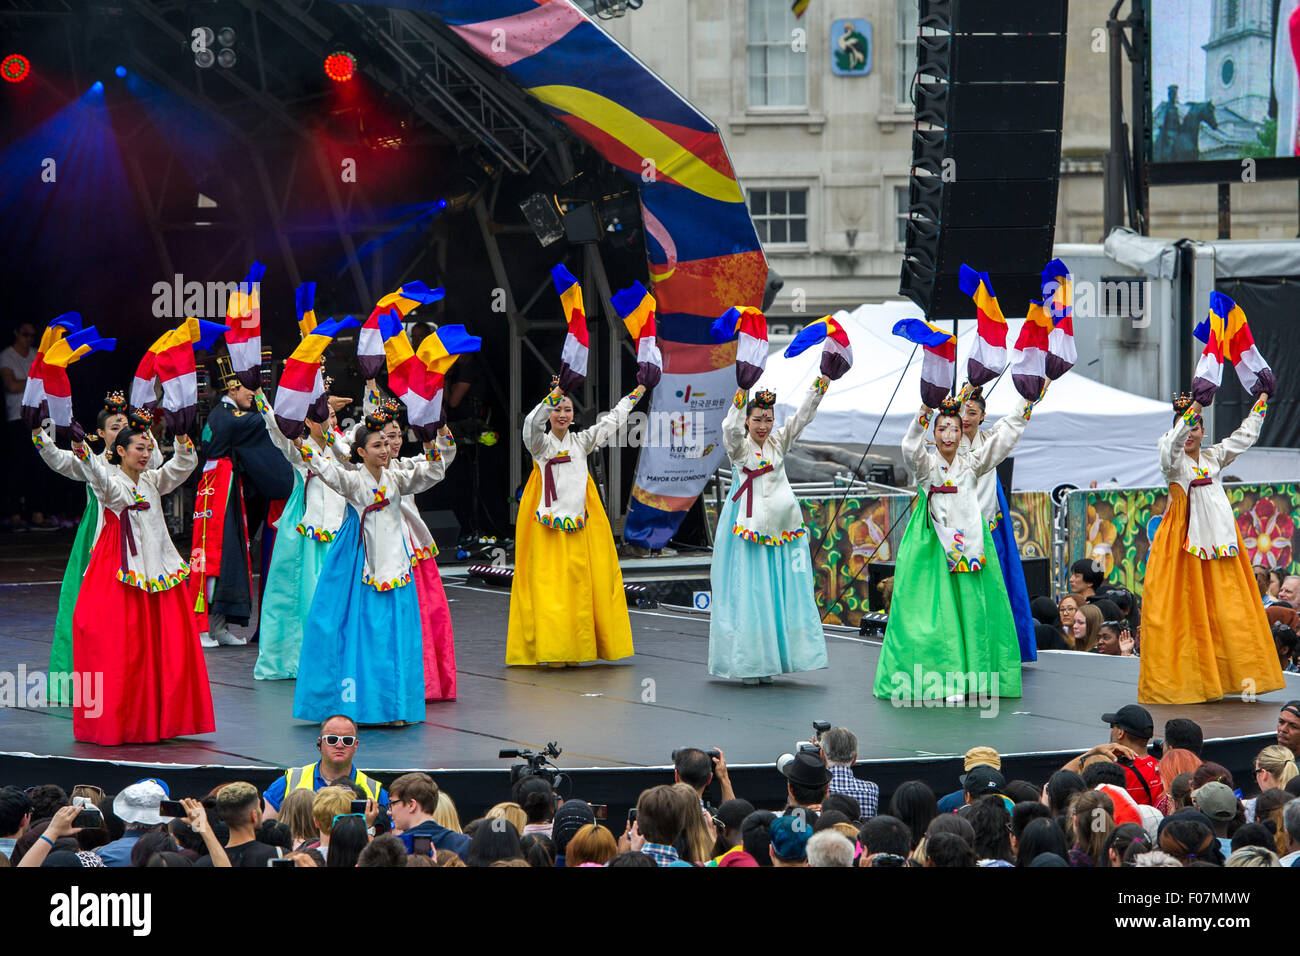 Londres, Royaume-Uni. 09 août, 2015. L'exécution du Pan Mariage Royal - La danse du Roi et de la Reine sur la scène du London Festival Coréen 2015. Banque D'Images